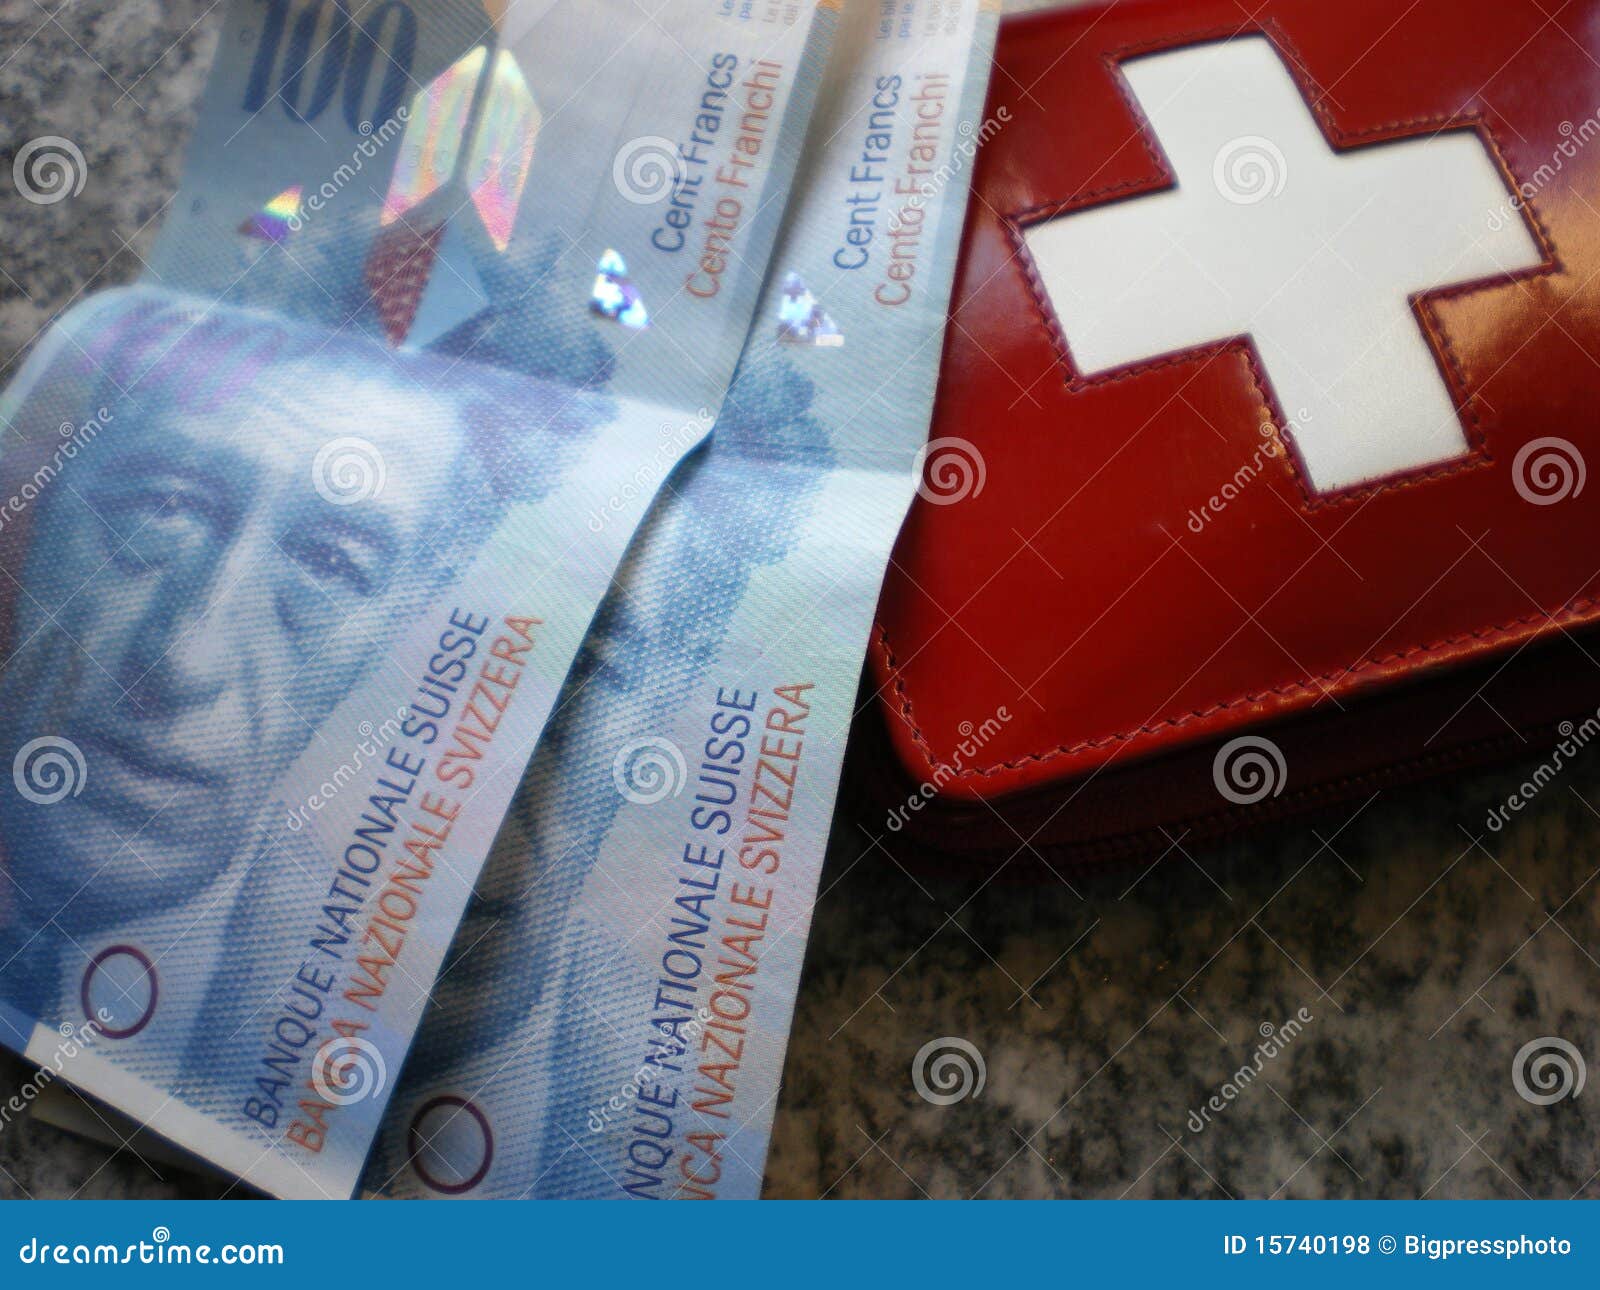 周围环绕着瑞士国旗的银行票据2752021 库存照片. 图片 包括有 幸运, 商业, 投资, 贫穷, 标志 - 220950638